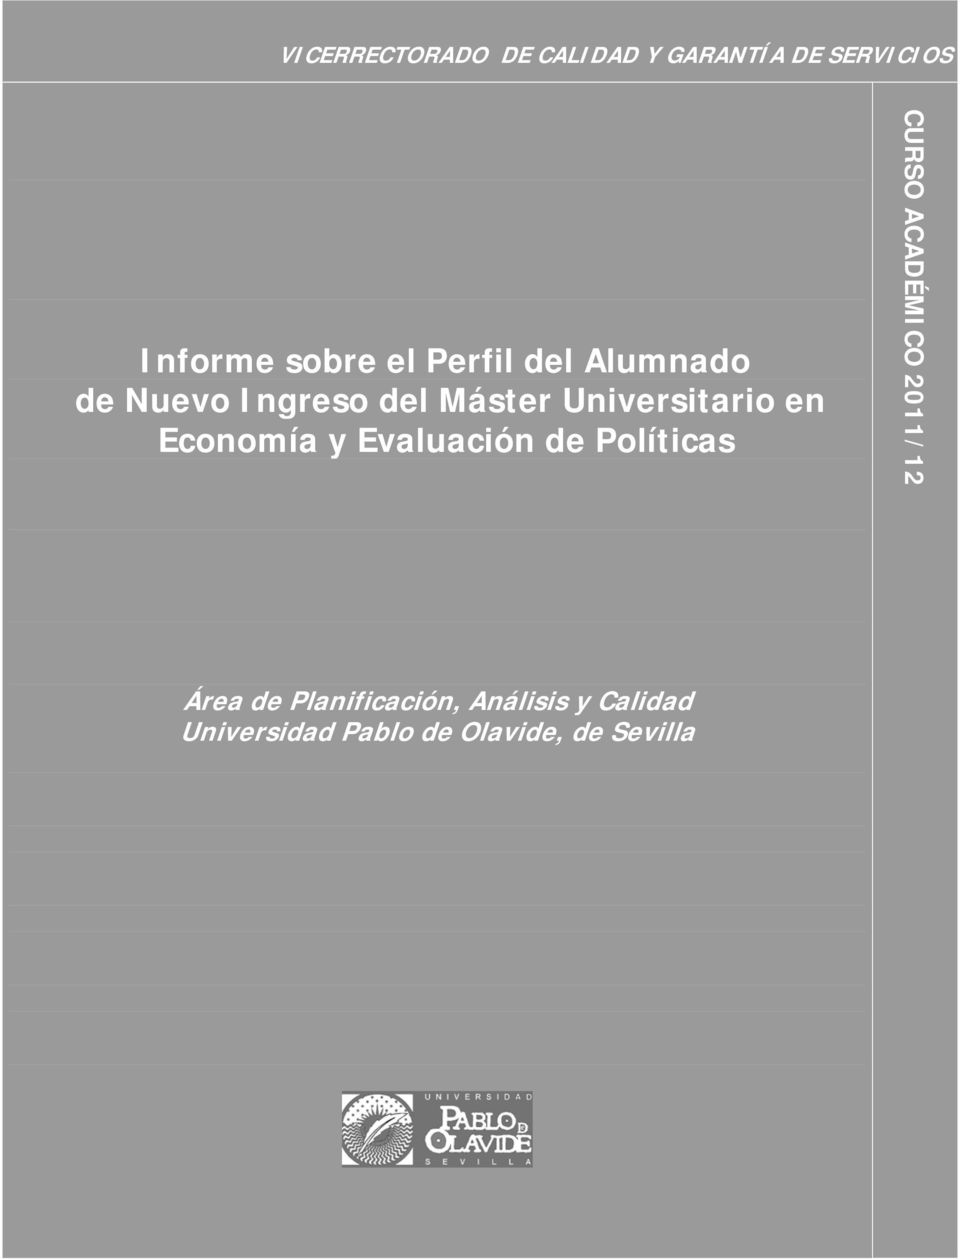 Universitario en Economía y Evaluación de Políticas CURSO